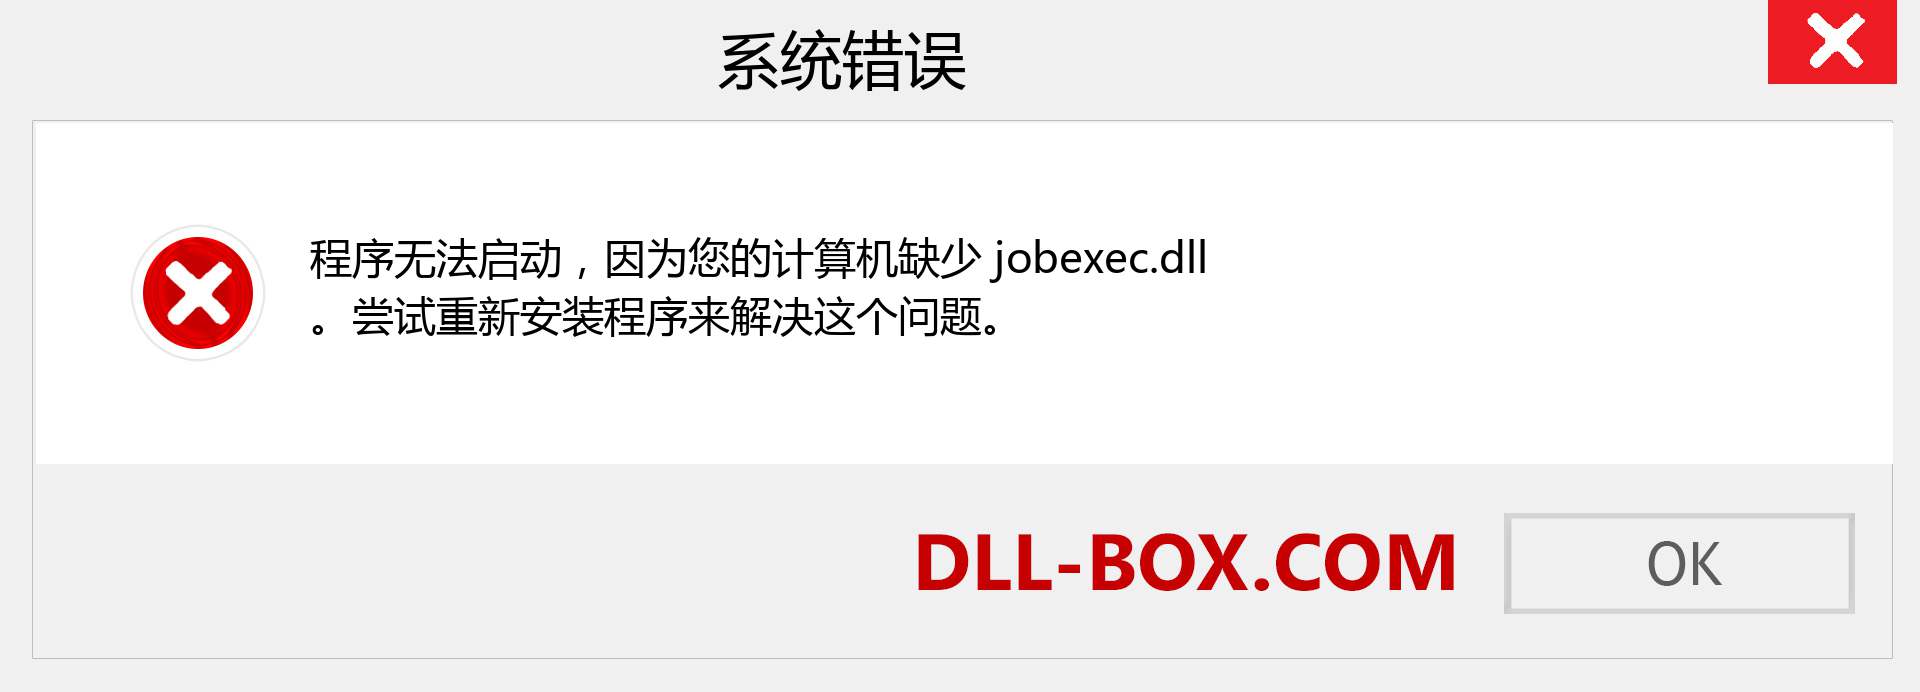 jobexec.dll 文件丢失？。 适用于 Windows 7、8、10 的下载 - 修复 Windows、照片、图像上的 jobexec dll 丢失错误